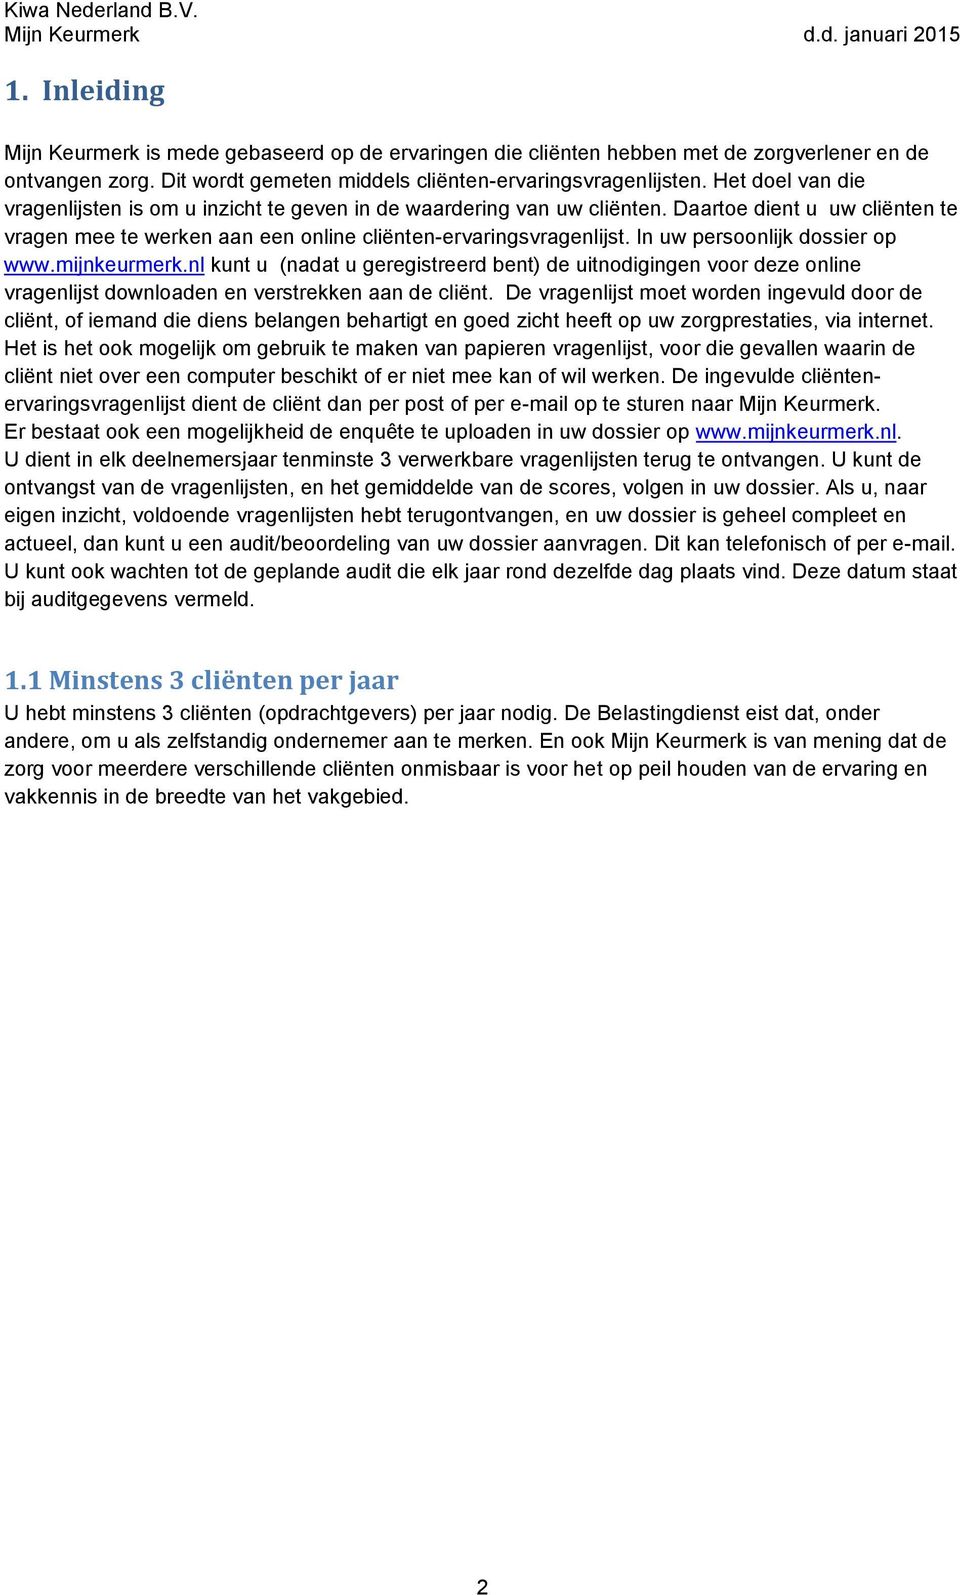 In uw persoonlijk dossier op www.mijnkeurmerk.nl kunt u (nadat u geregistreerd bent) de uitnodigingen voor deze online vragenlijst downloaden en verstrekken aan de cliënt.